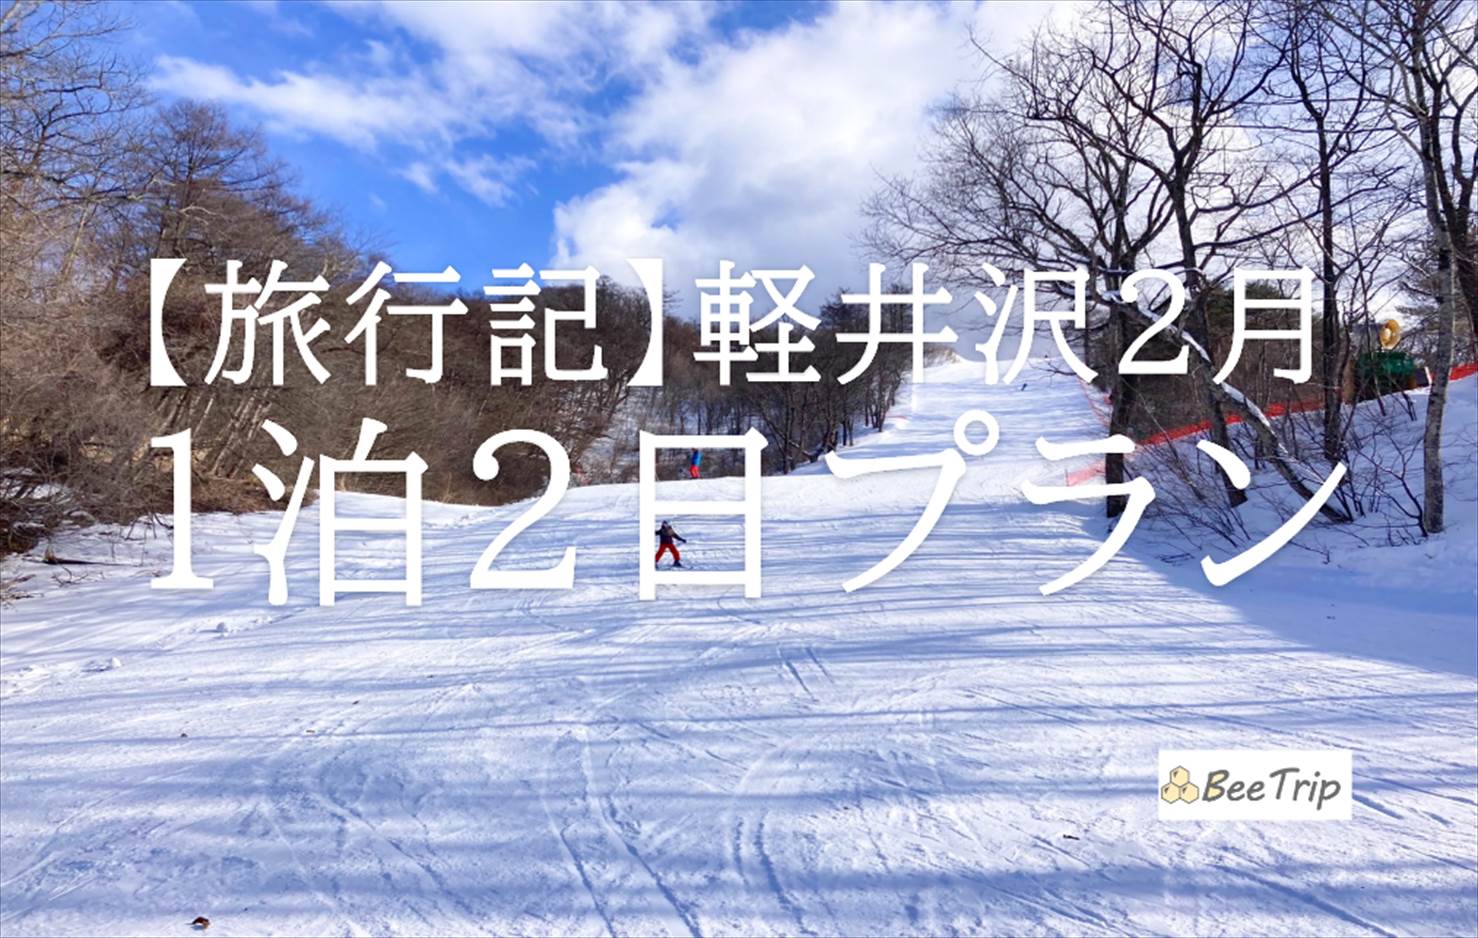 軽井沢1泊2日旅行のブログ/旅行記！2月冬の軽井沢を全力で楽しむ2日間のプランを記録します